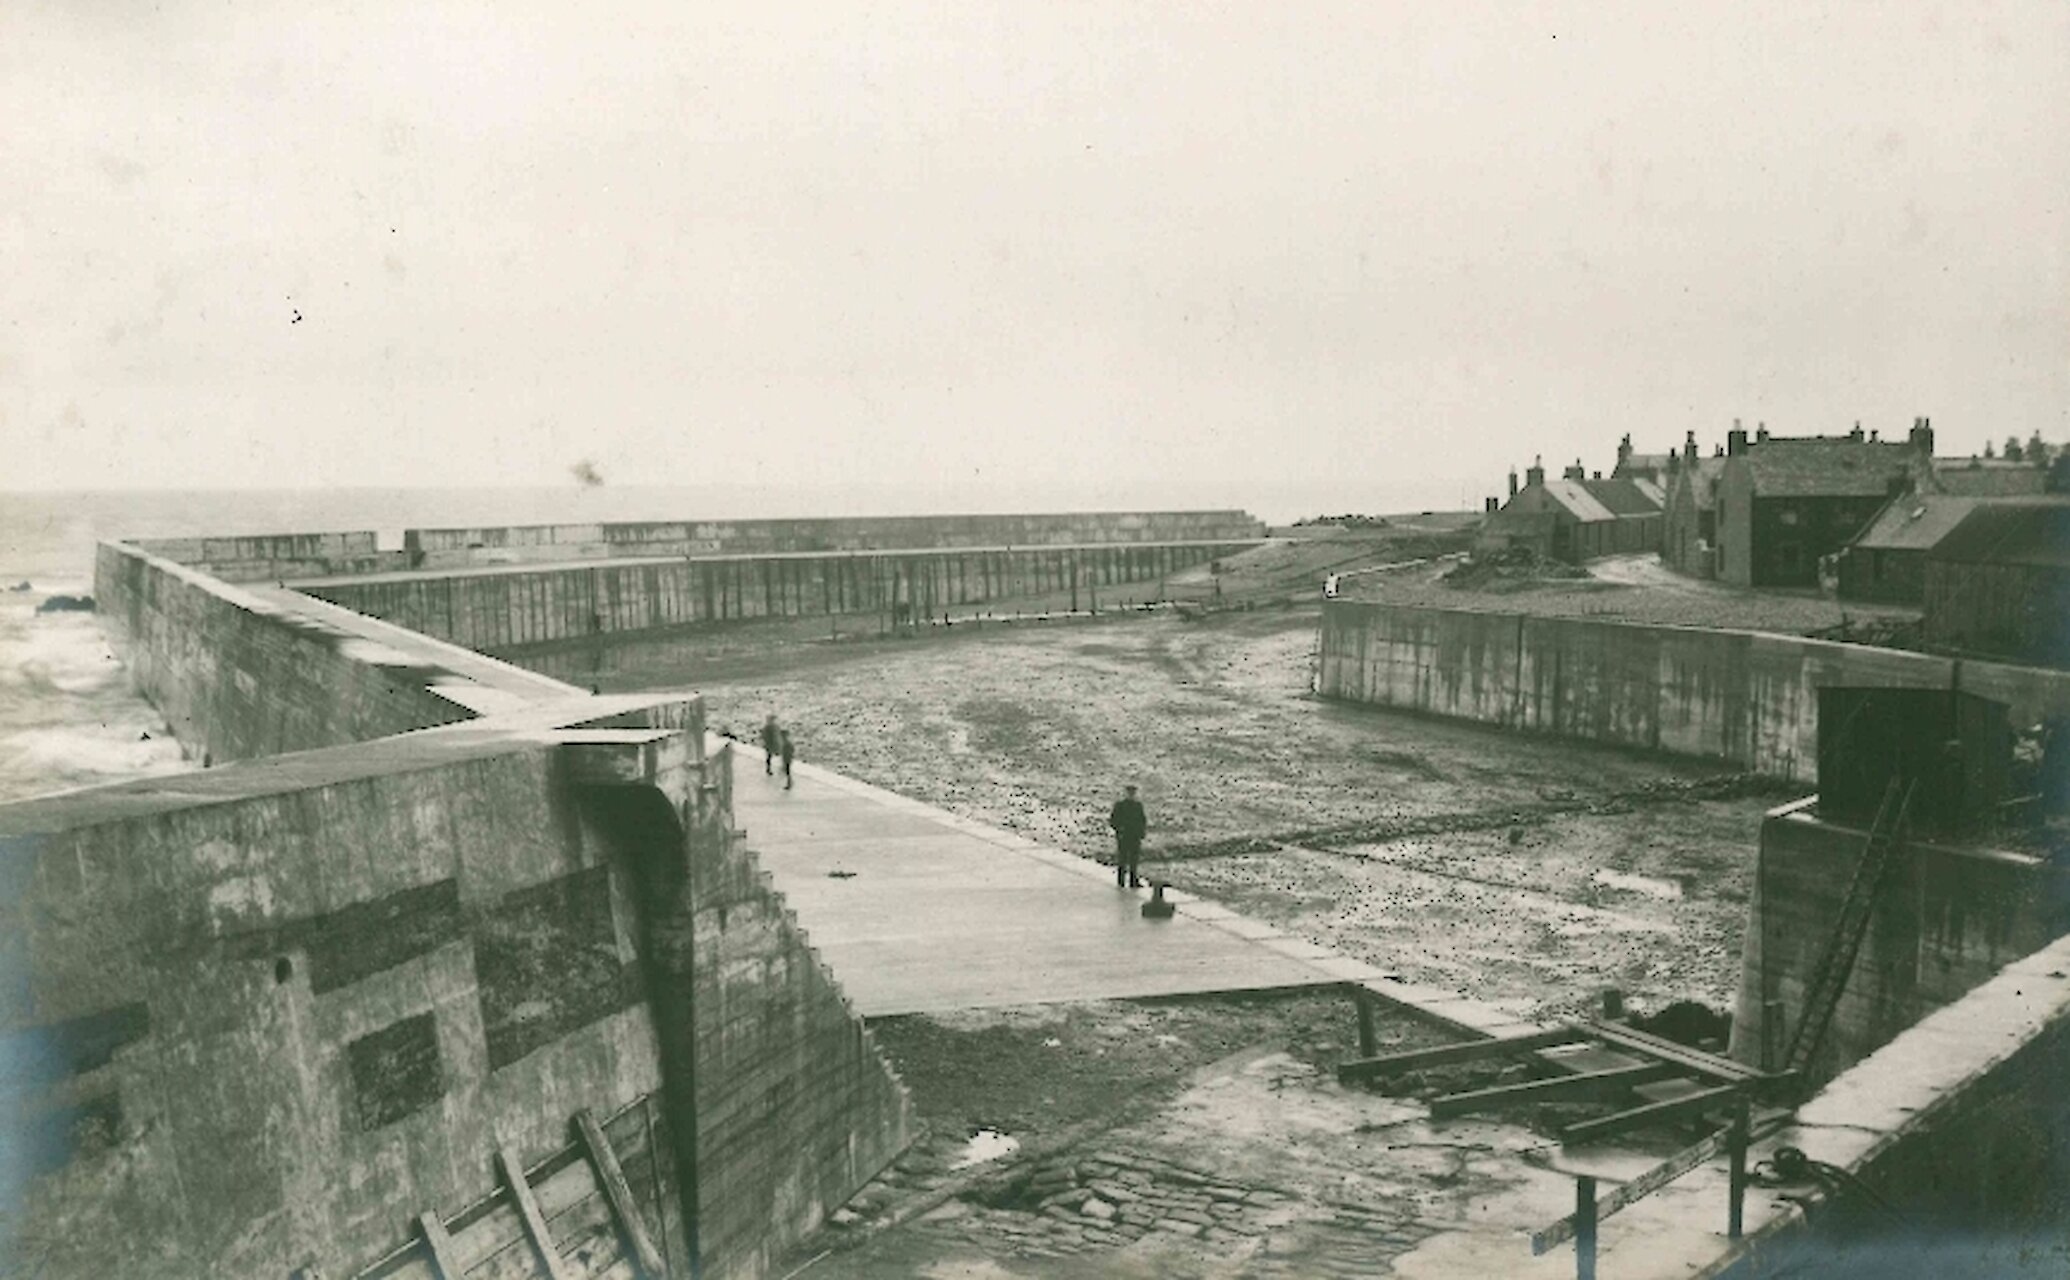 MacDuff Harbour, 1910s